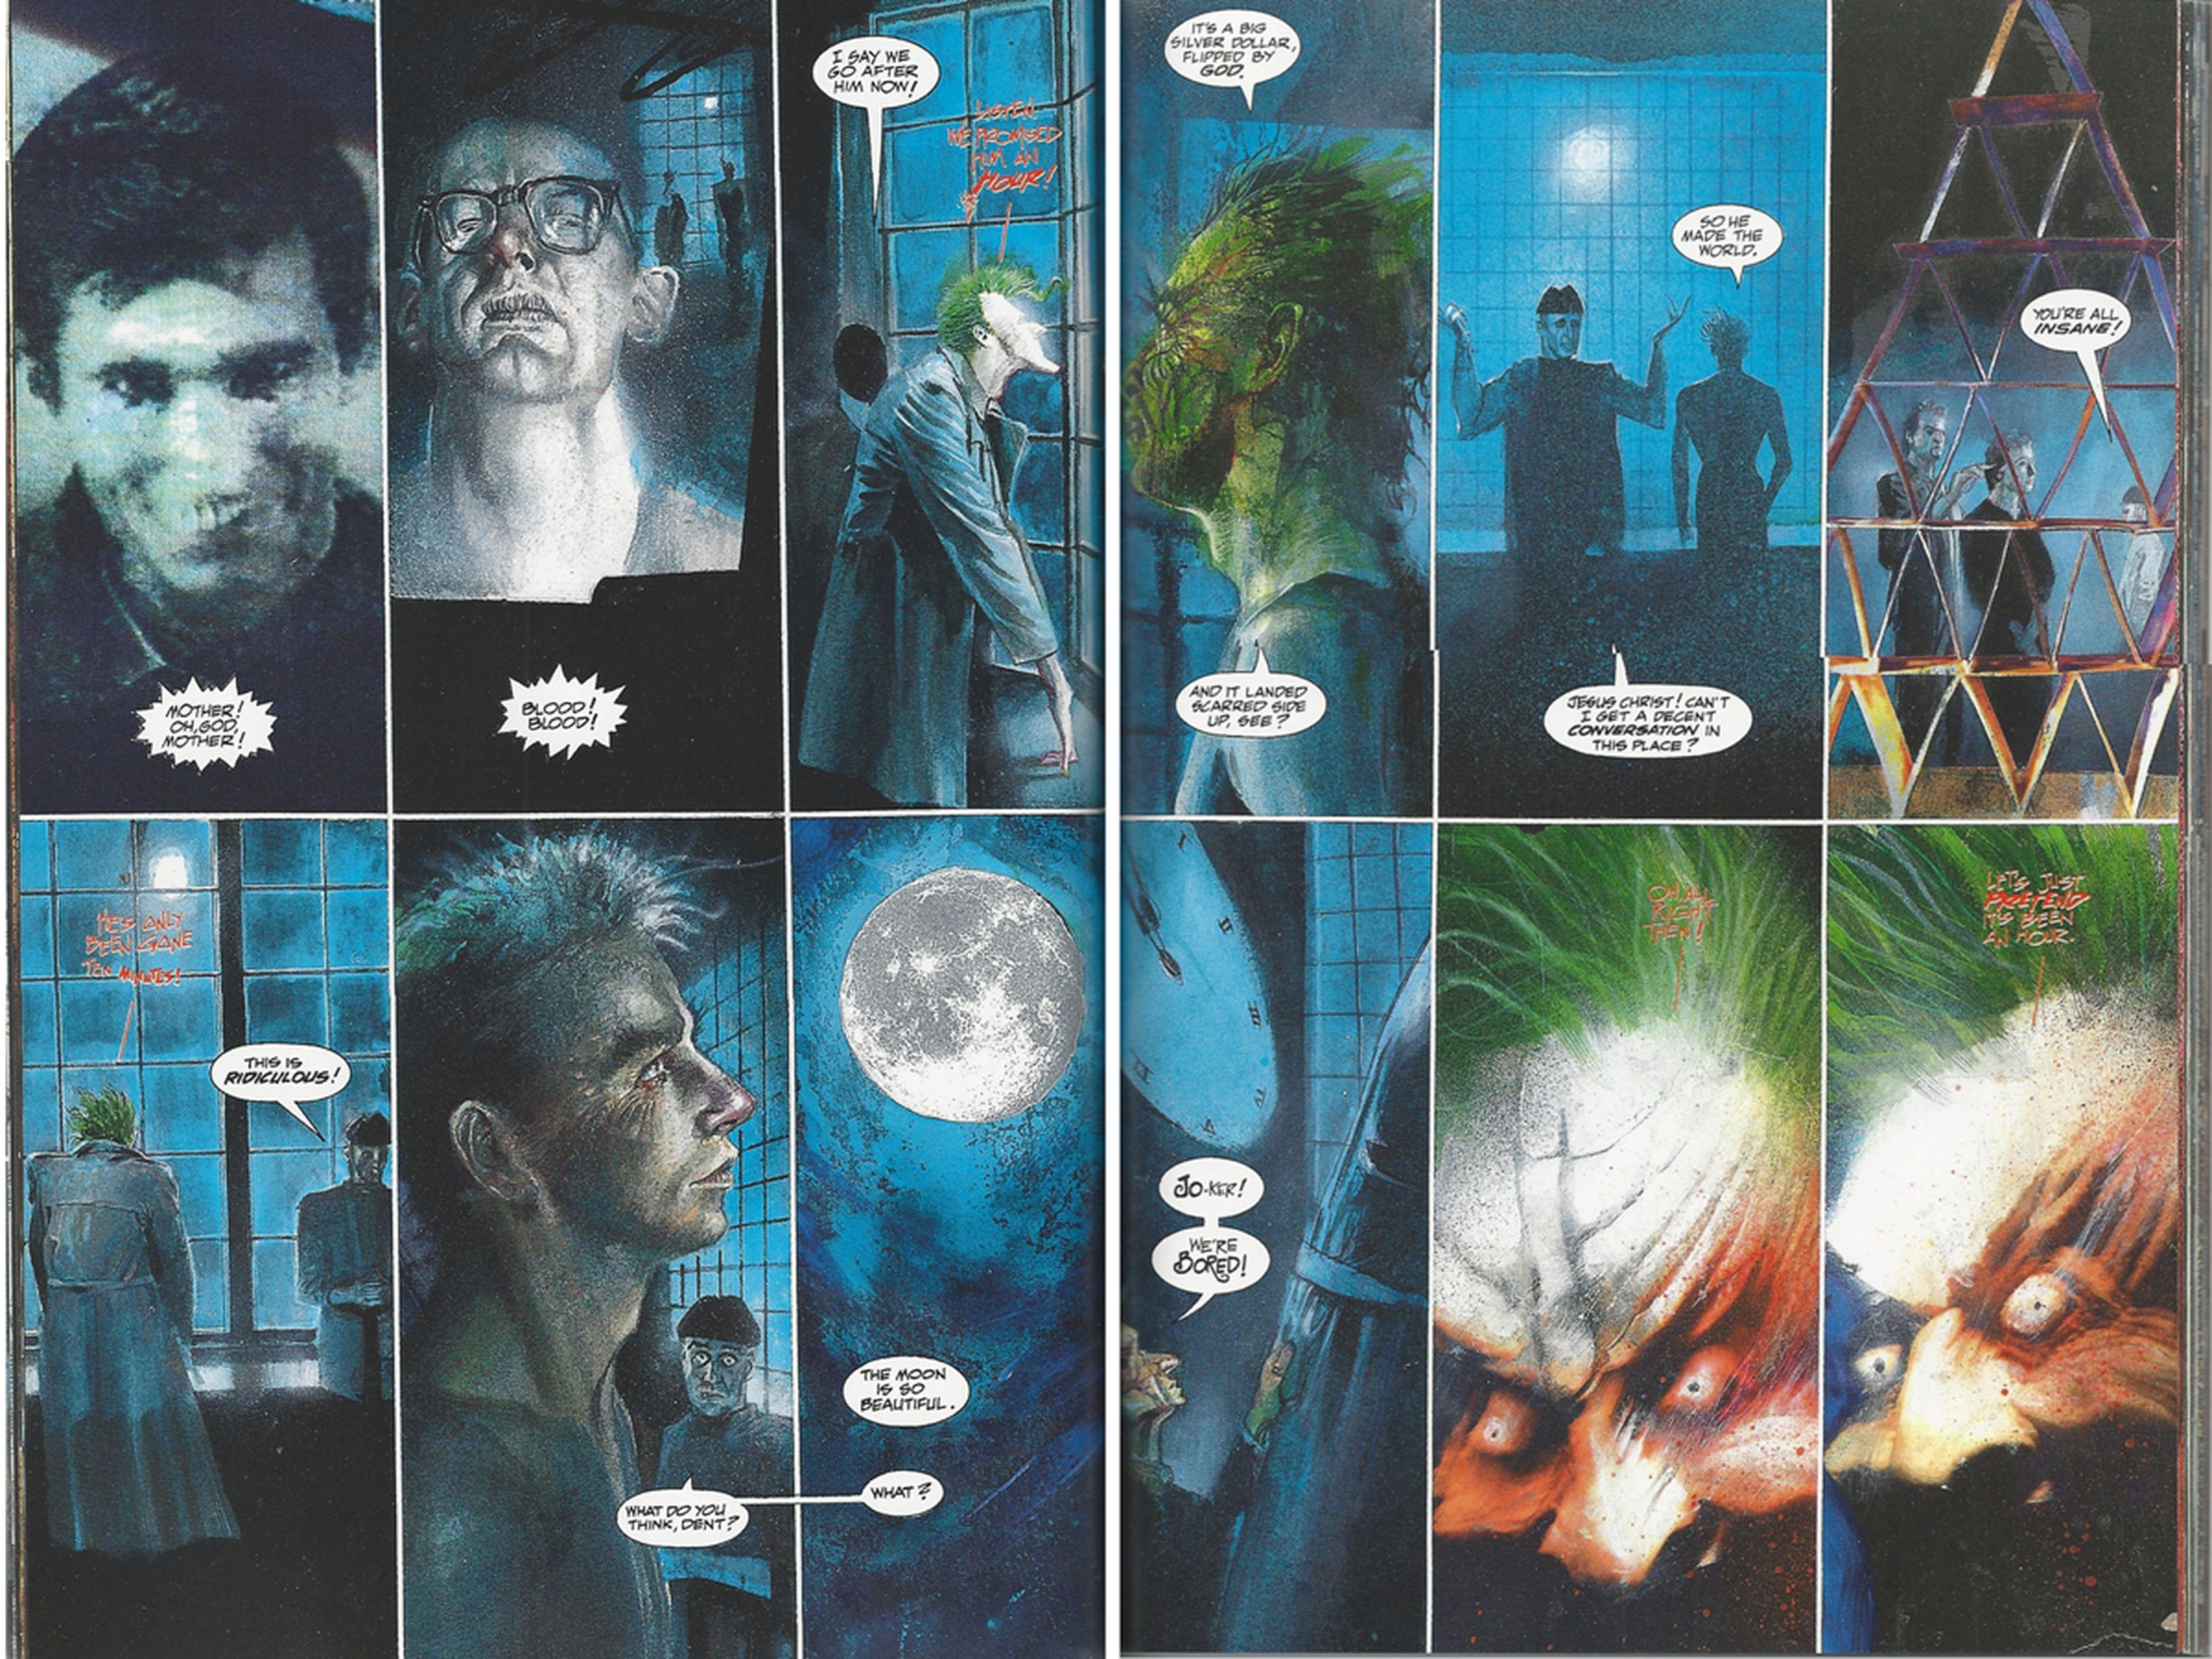 Los Mejores Cómics: Batman Asilo Arkham, de Morrison y McKean